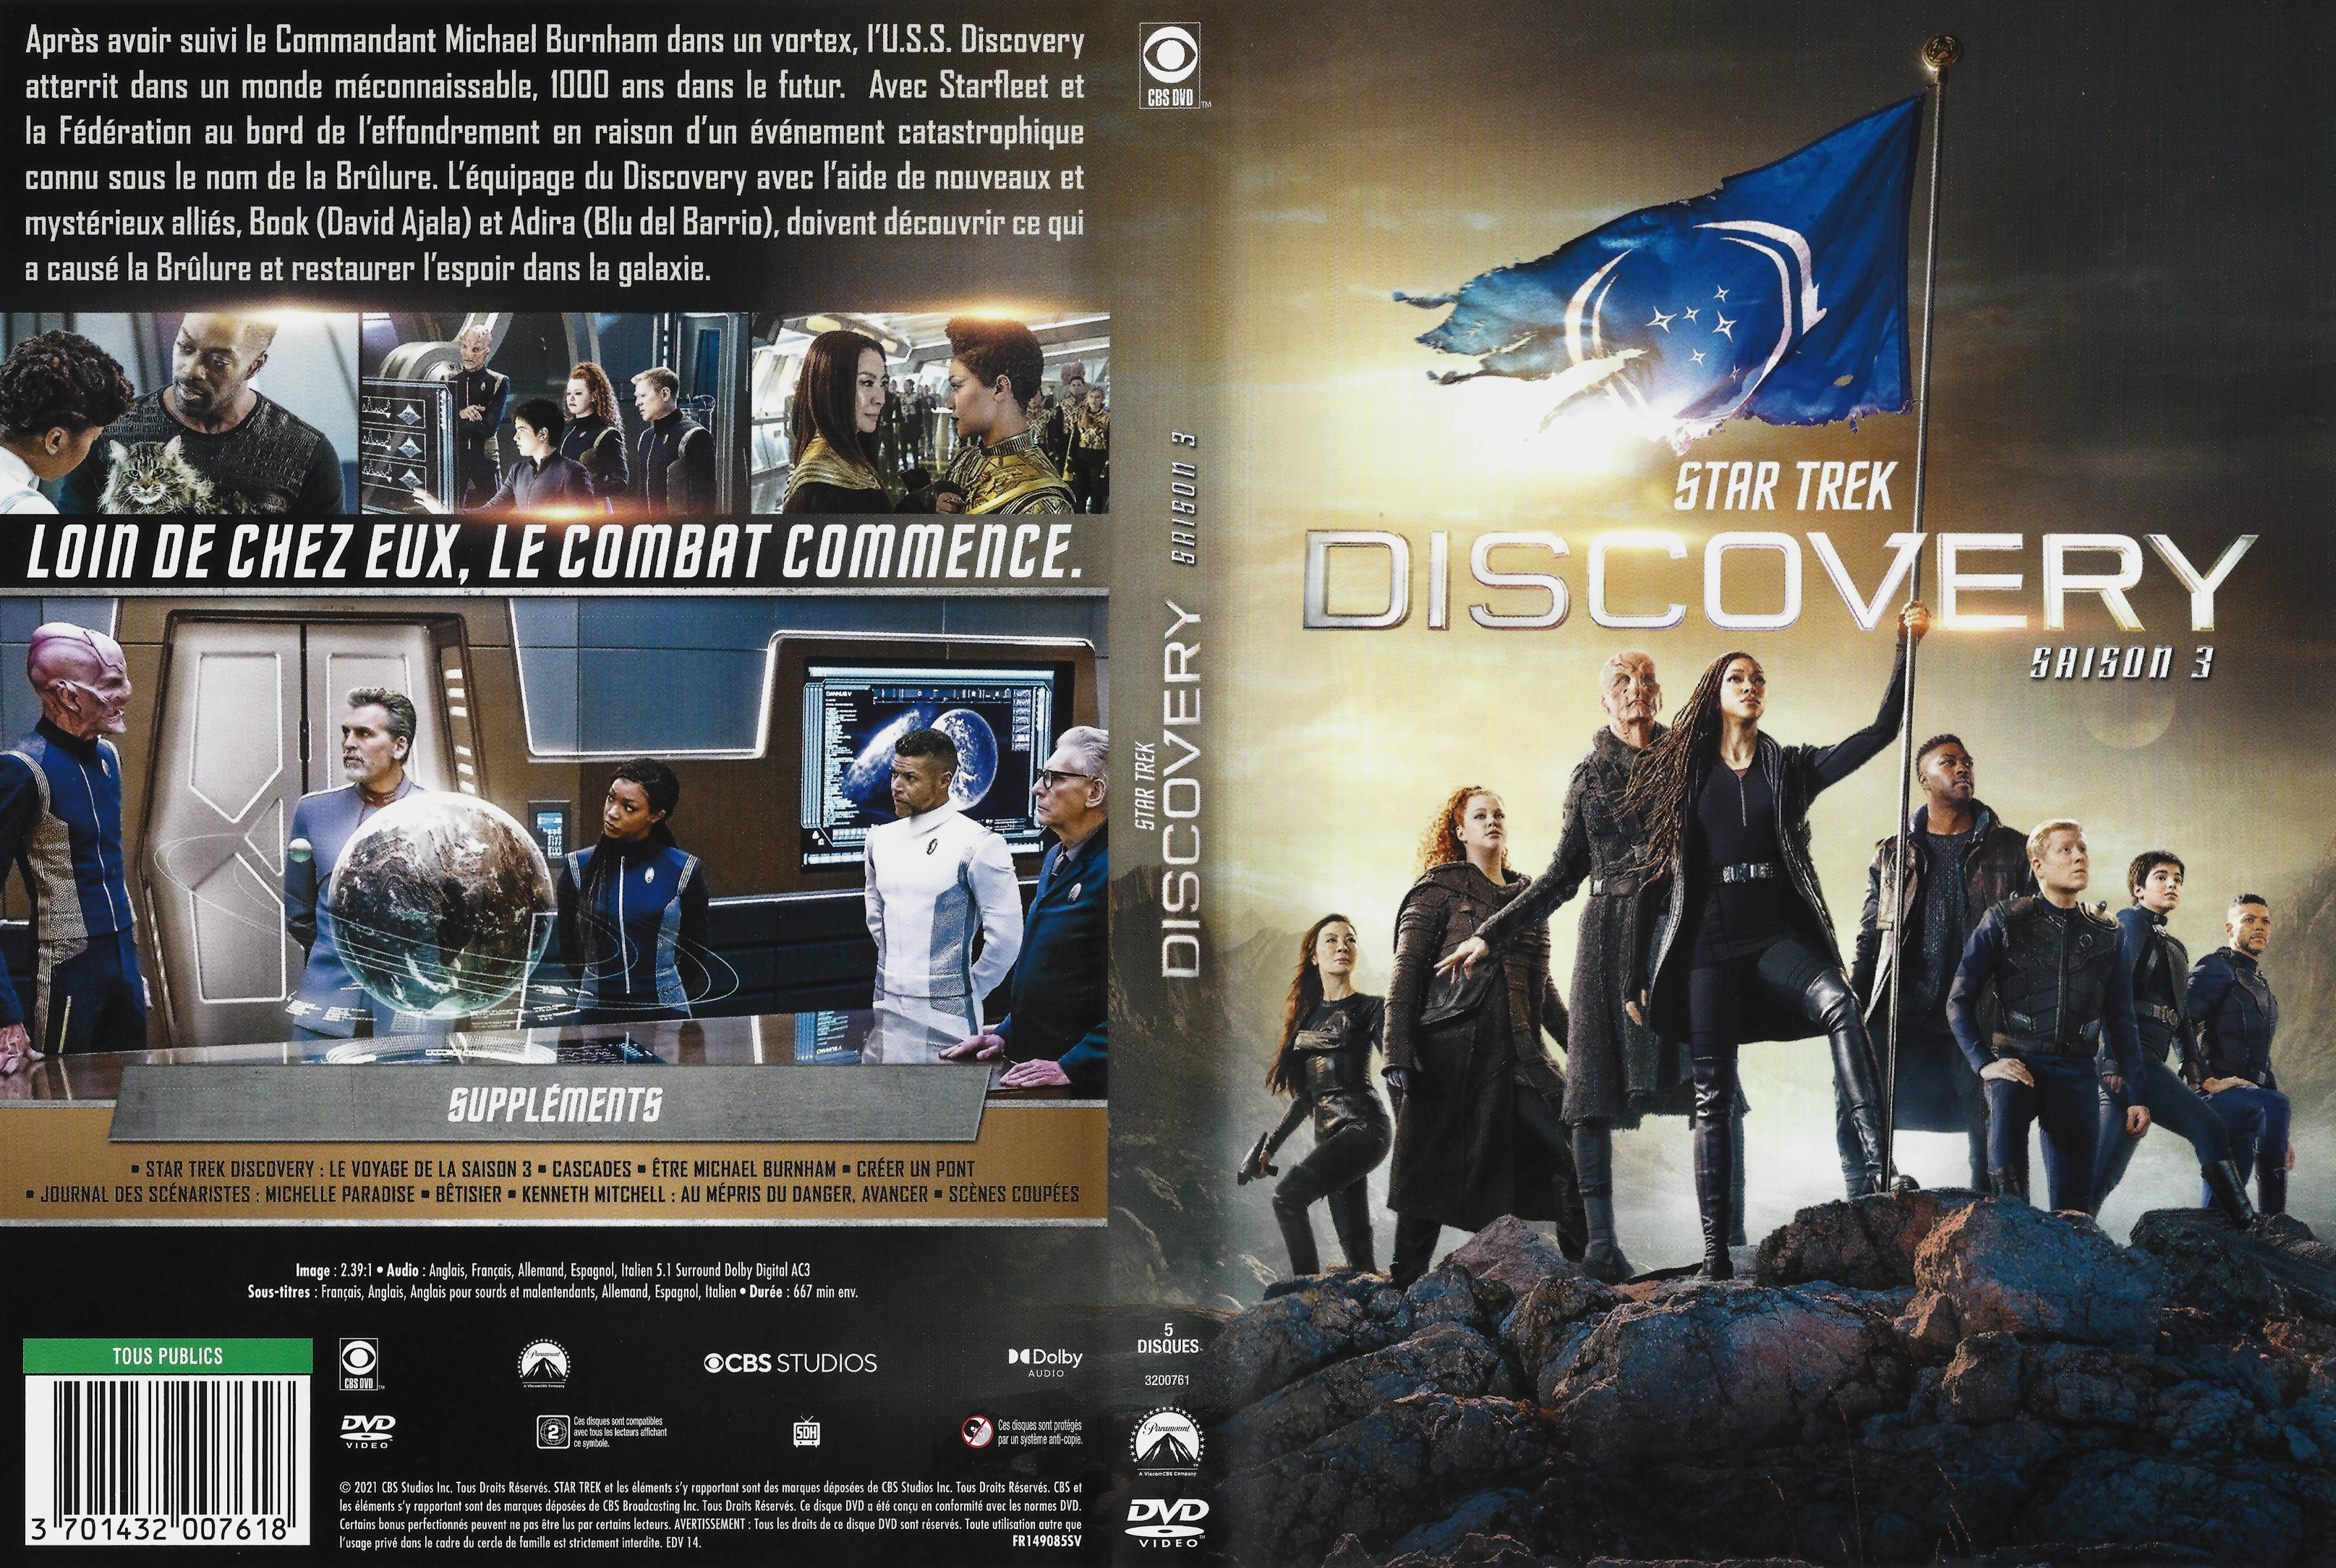 Jaquette DVD Star Trek Discovery saison 3